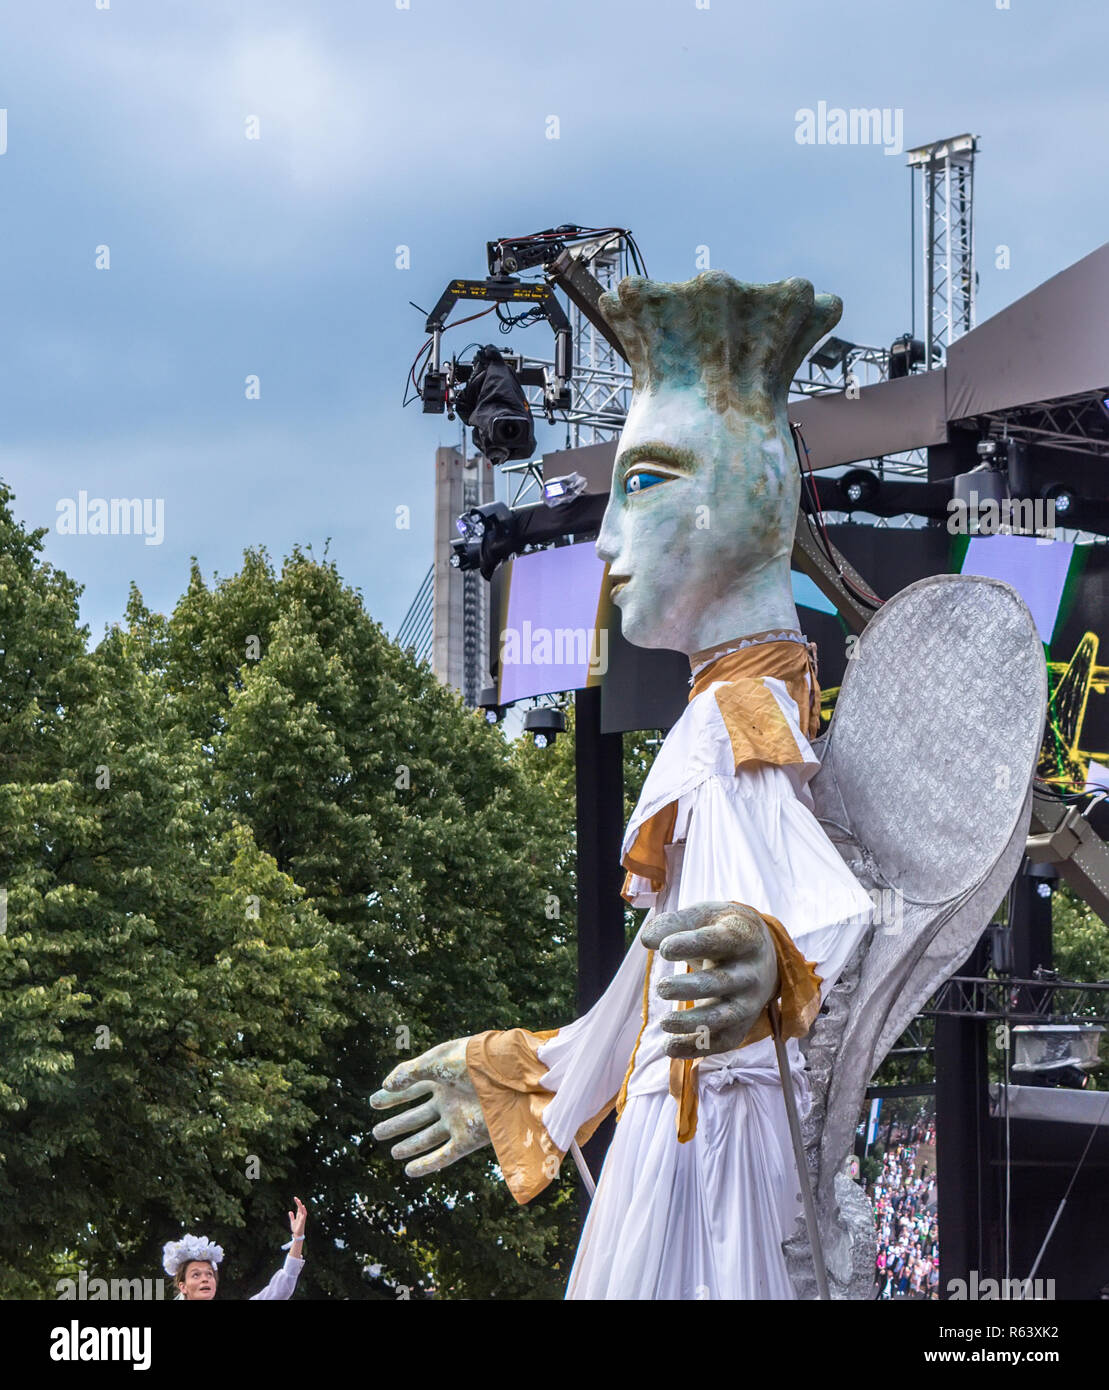 Fragment der Street Parade "Engel" durch tschechische Theater V.O.S.A. durchgeführt in Riga City Festival. 7 Meter hohe Puppe mit Schauspielern auf Stelzen Stockfoto